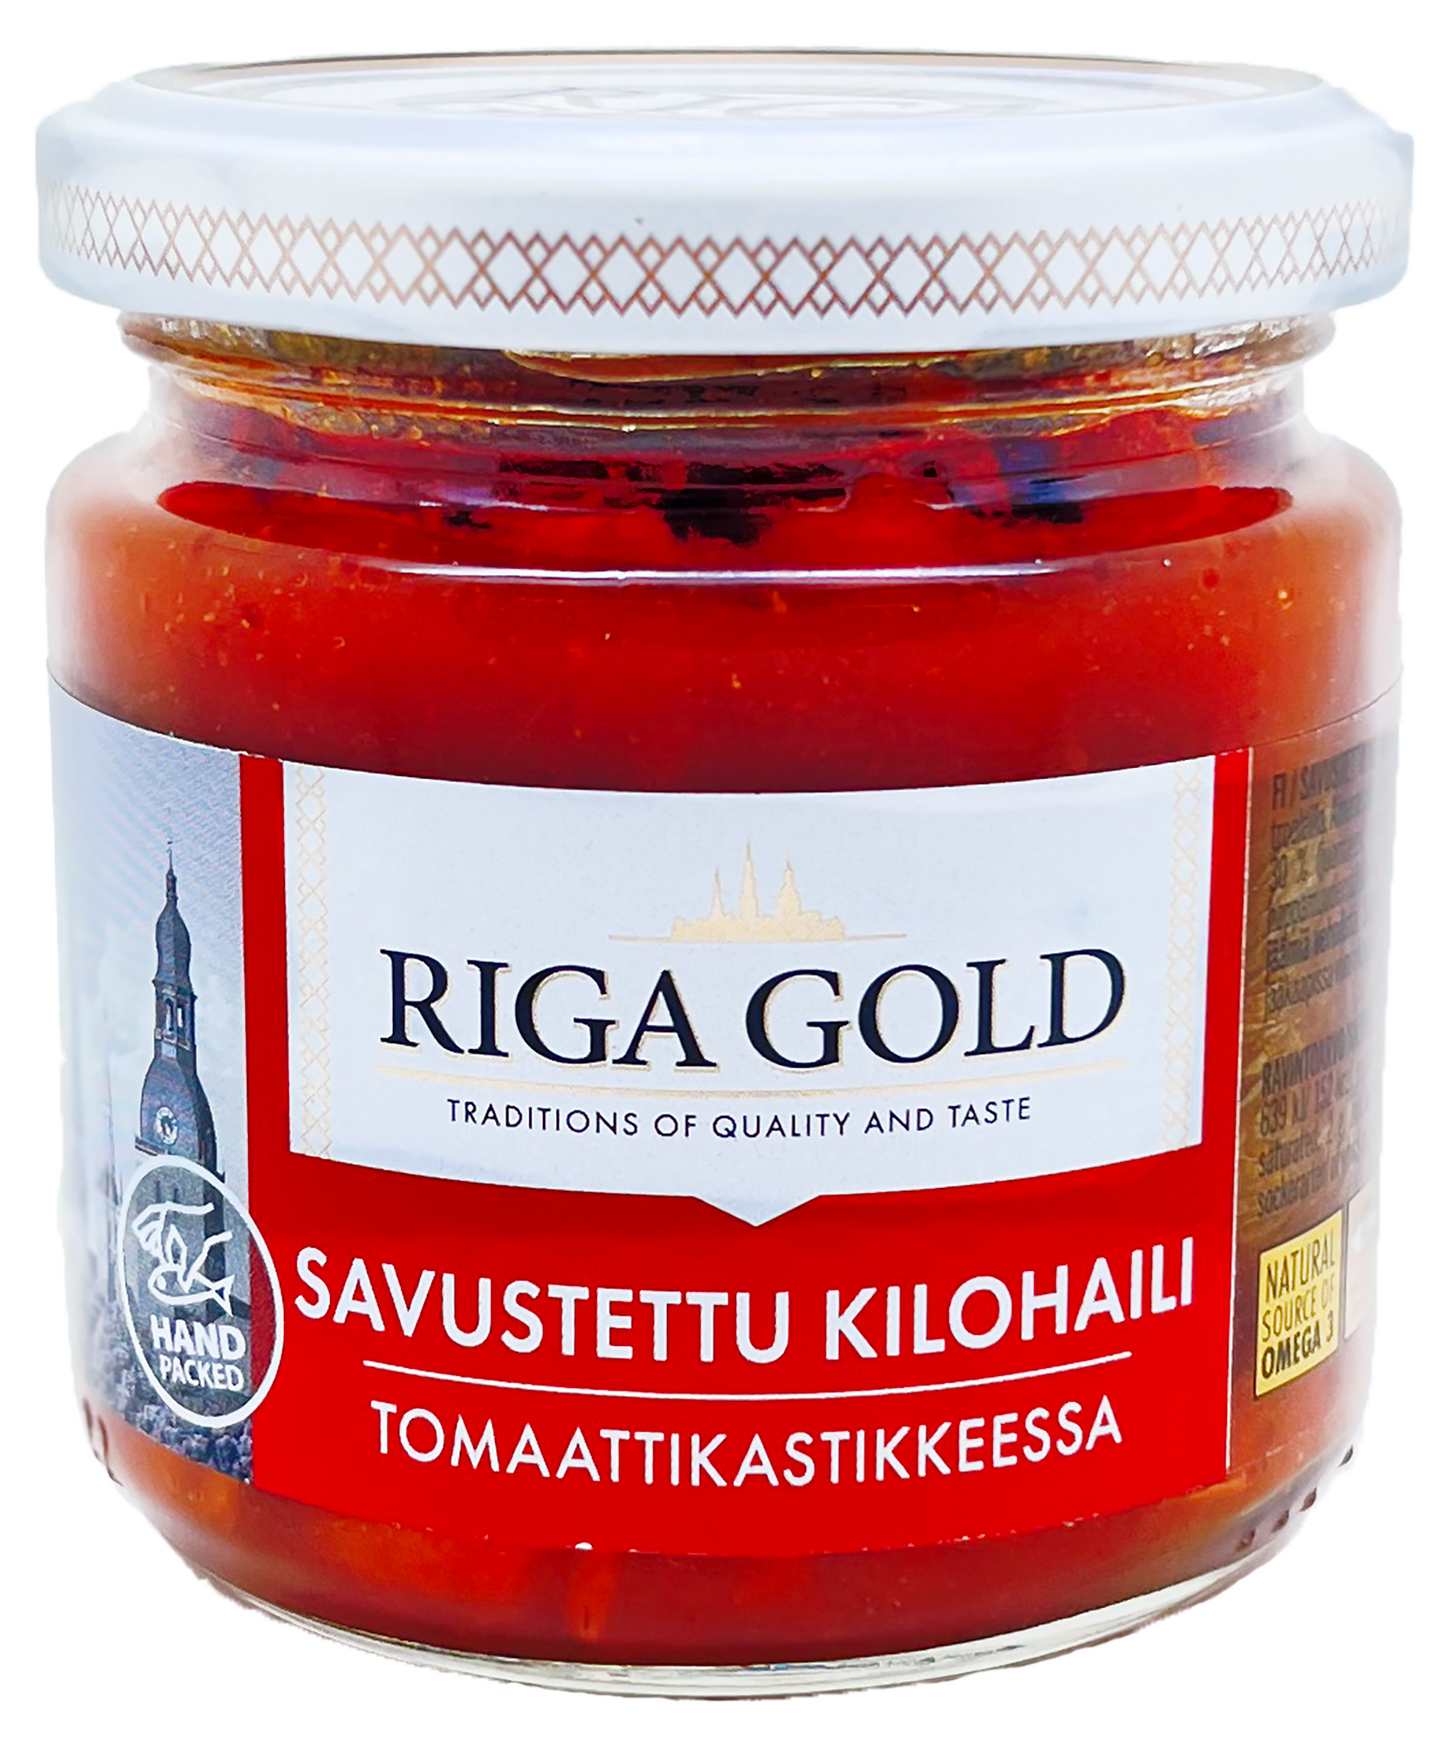 Riga Gold savustettu kilohaili tomaattikastikkeessa 185g